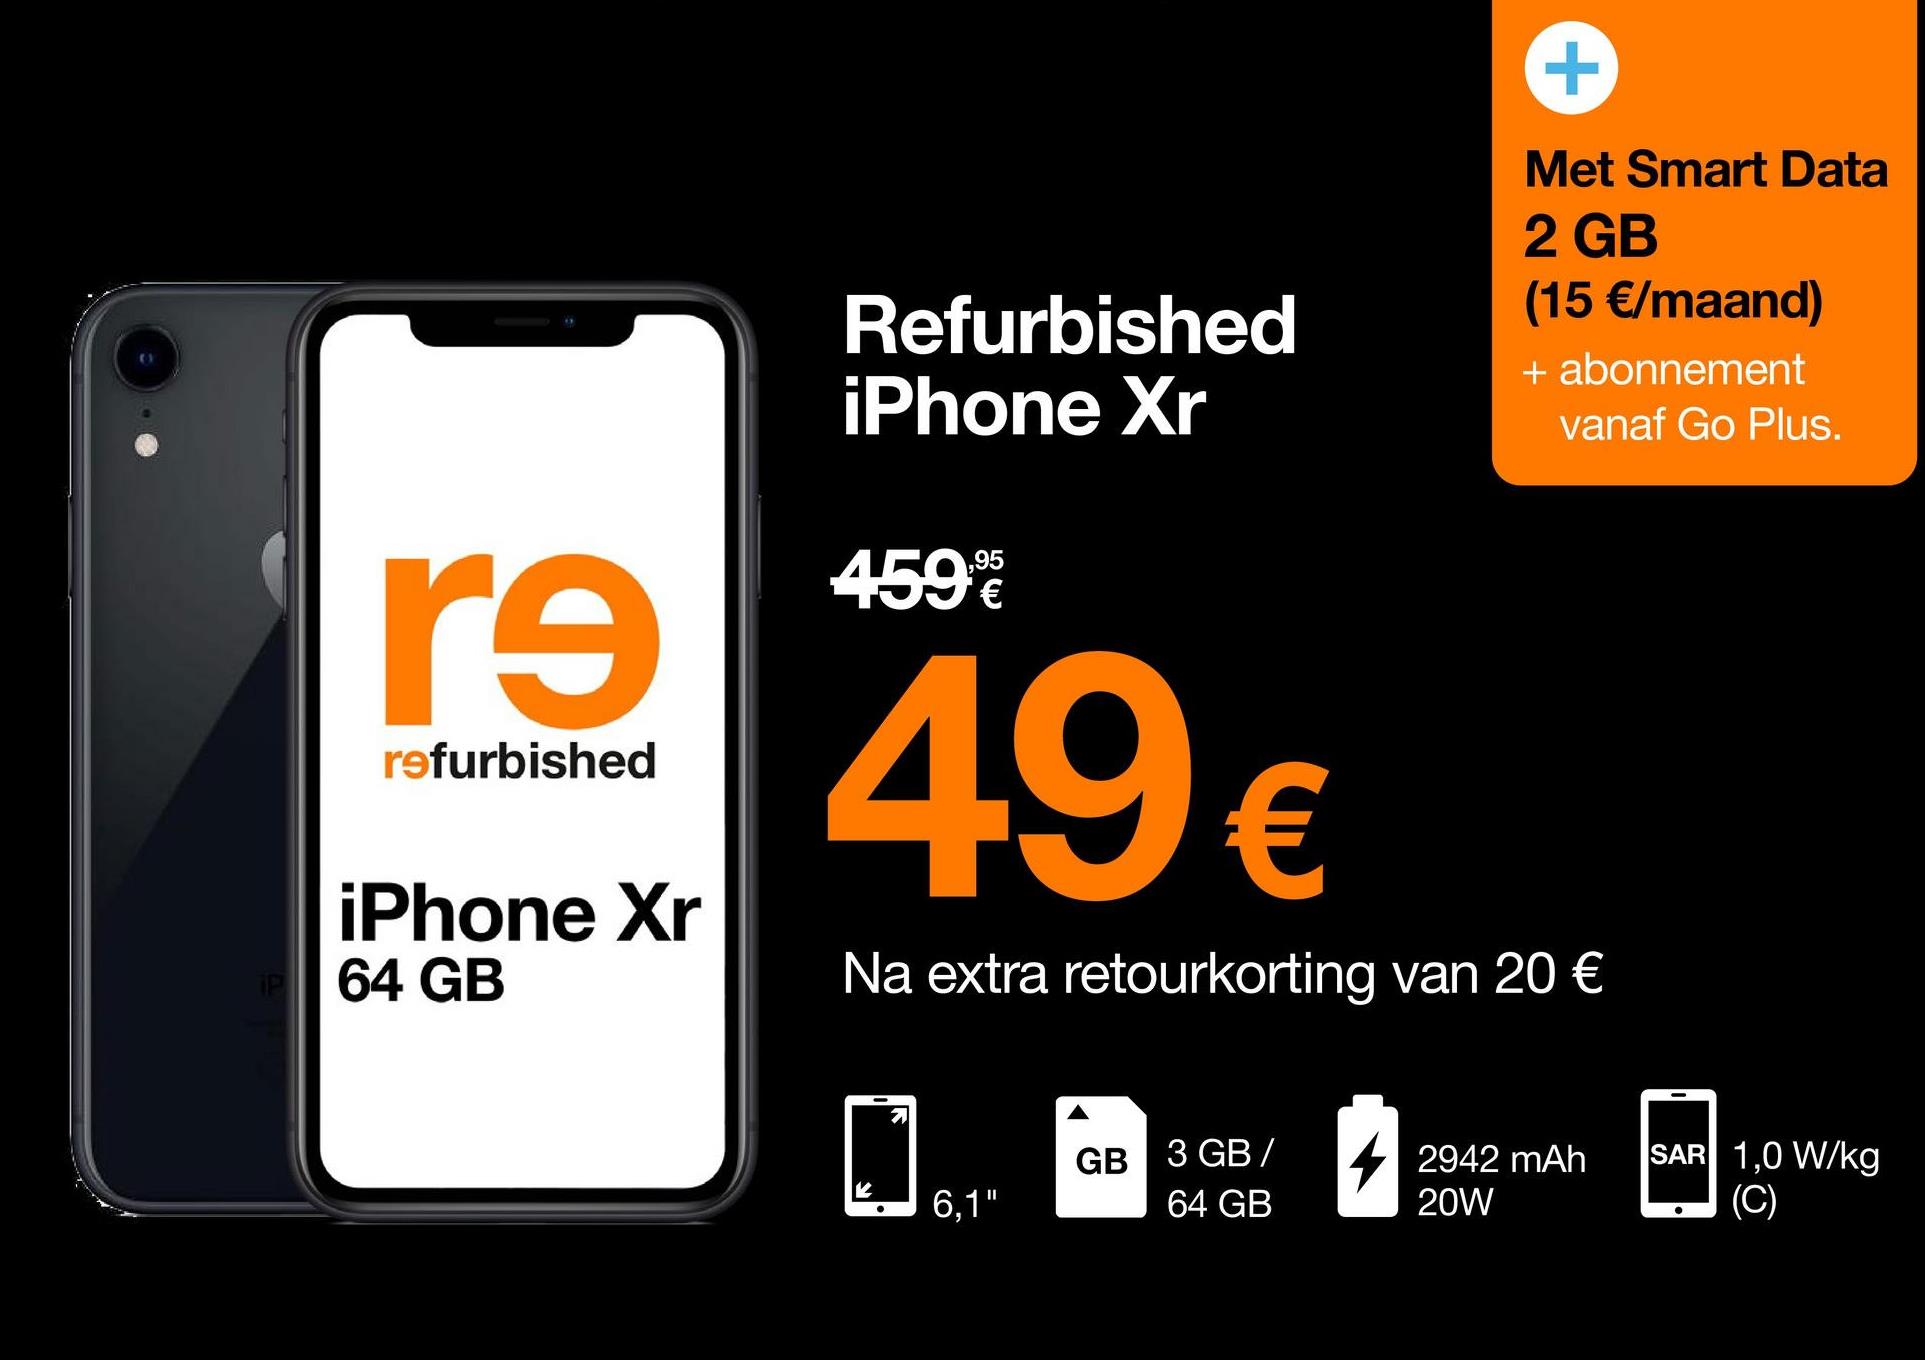 +
Refurbished
iPhone Xr
Met Smart Data
2 GB
(15 €/maand)
+ abonnement
vanaf Go Plus.
459
,95
€
re
refurbished
49€
iPhone Xr
64 GB
Na extra retourkorting van 20 €
0
GB 3 GB
2942 mAh
20W
SAR 1,0 W/kg
(C)
6,1"
'
64 GB
